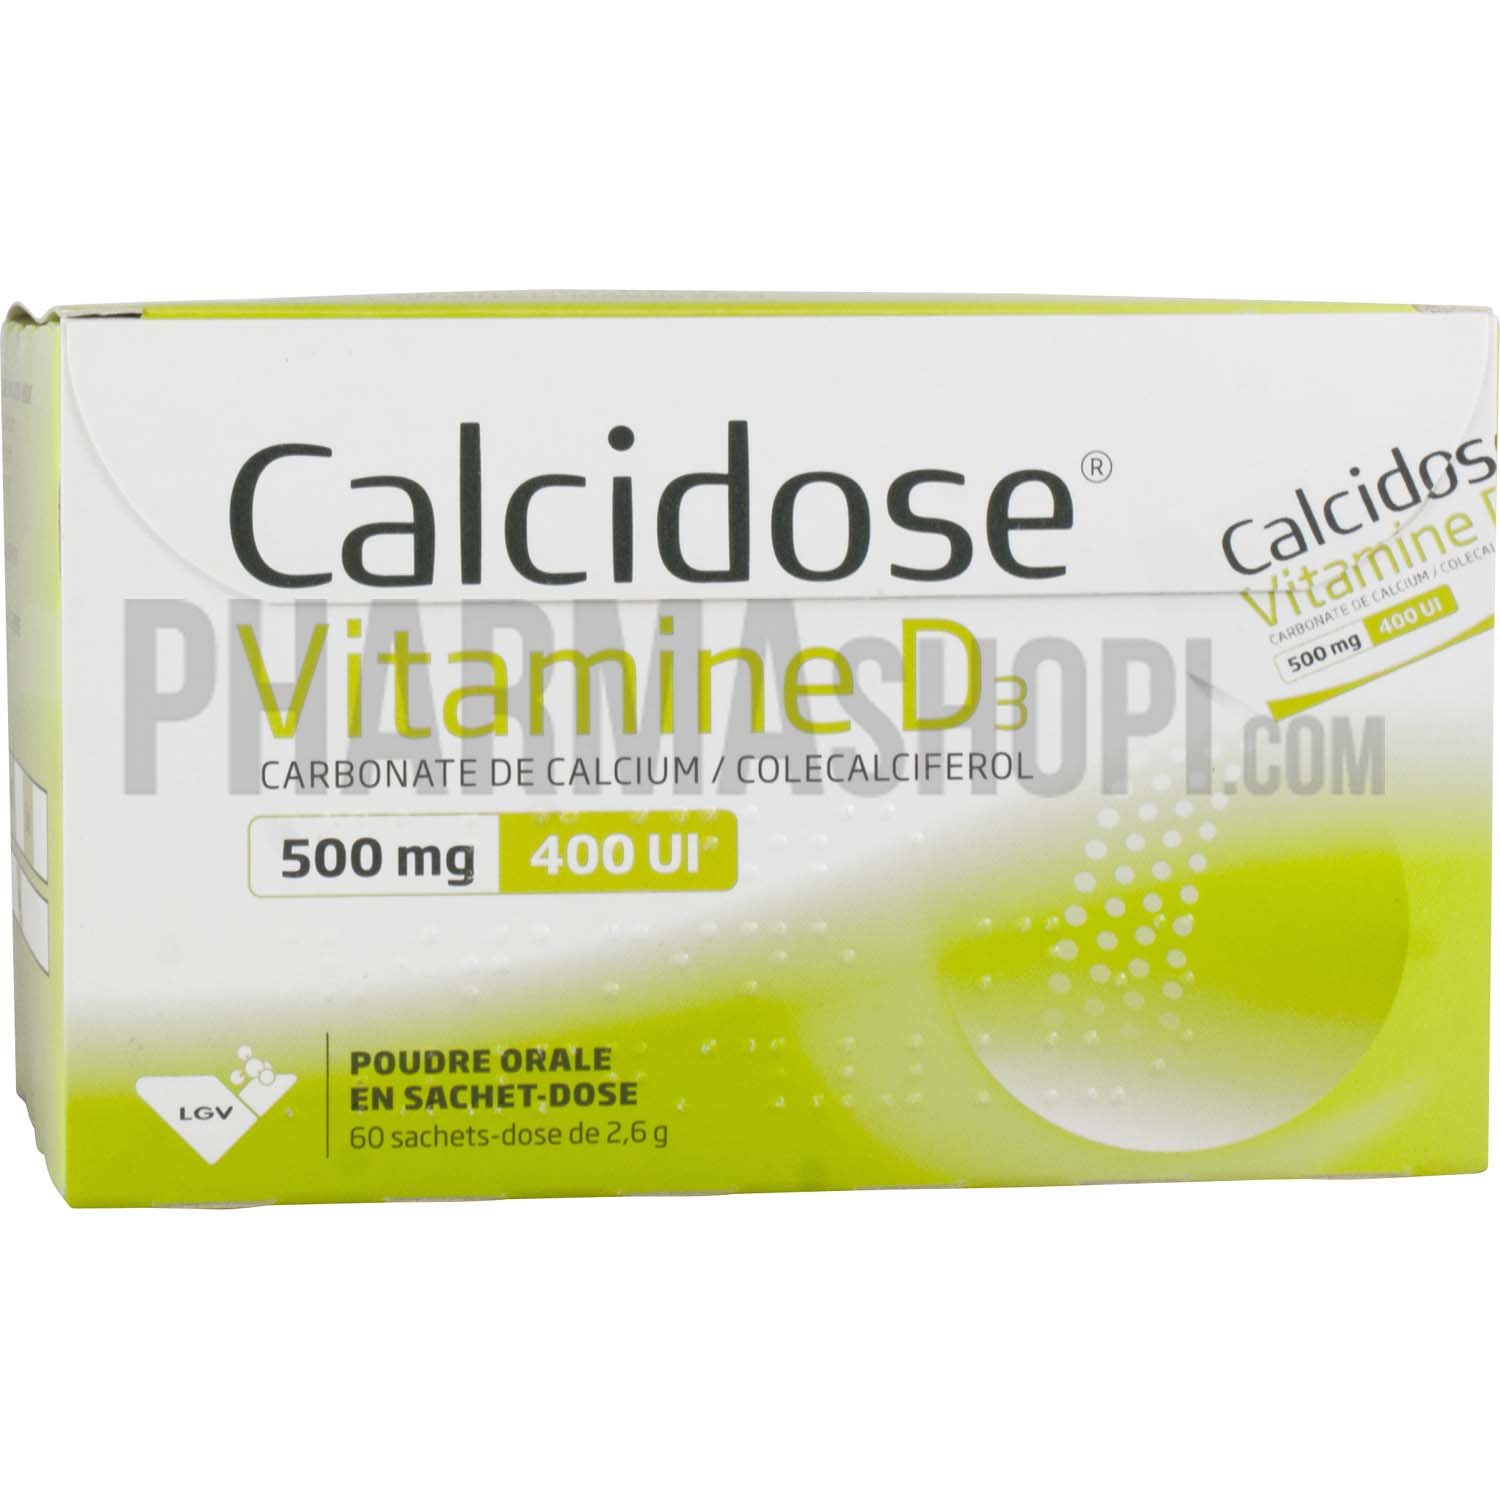 Calcidose Vitamine D3 500mg/400UI poudre pour solution buvable en sachet - boîte de 60 sachets